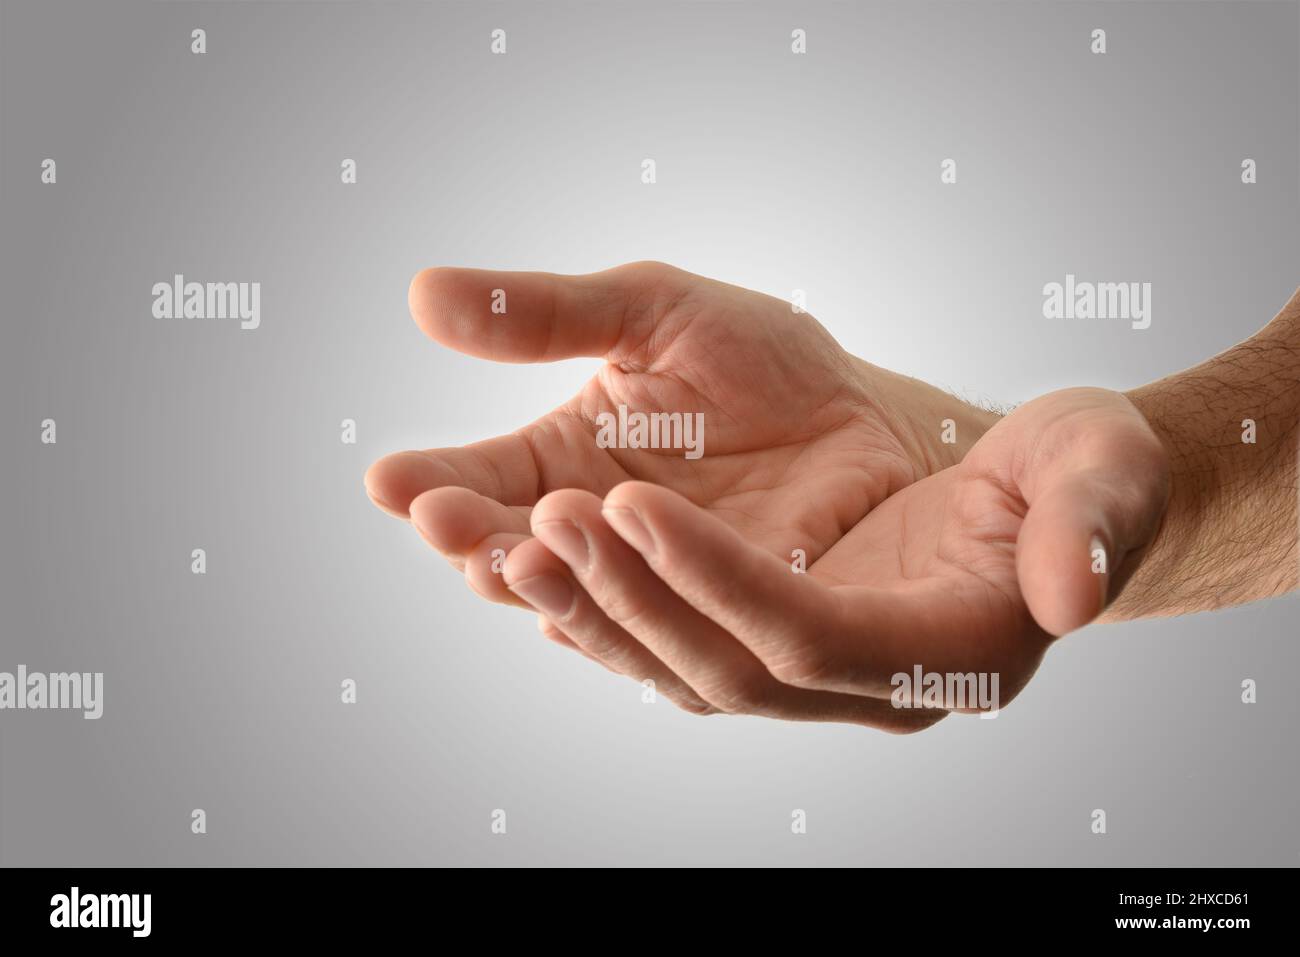 Hände mit Handflächen nach oben eines religiösen Mannes mit einer Geste des Opferens oder des Bittens mit isoliertem grauem Hintergrund. Horizontale Zusammensetzung. Stockfoto